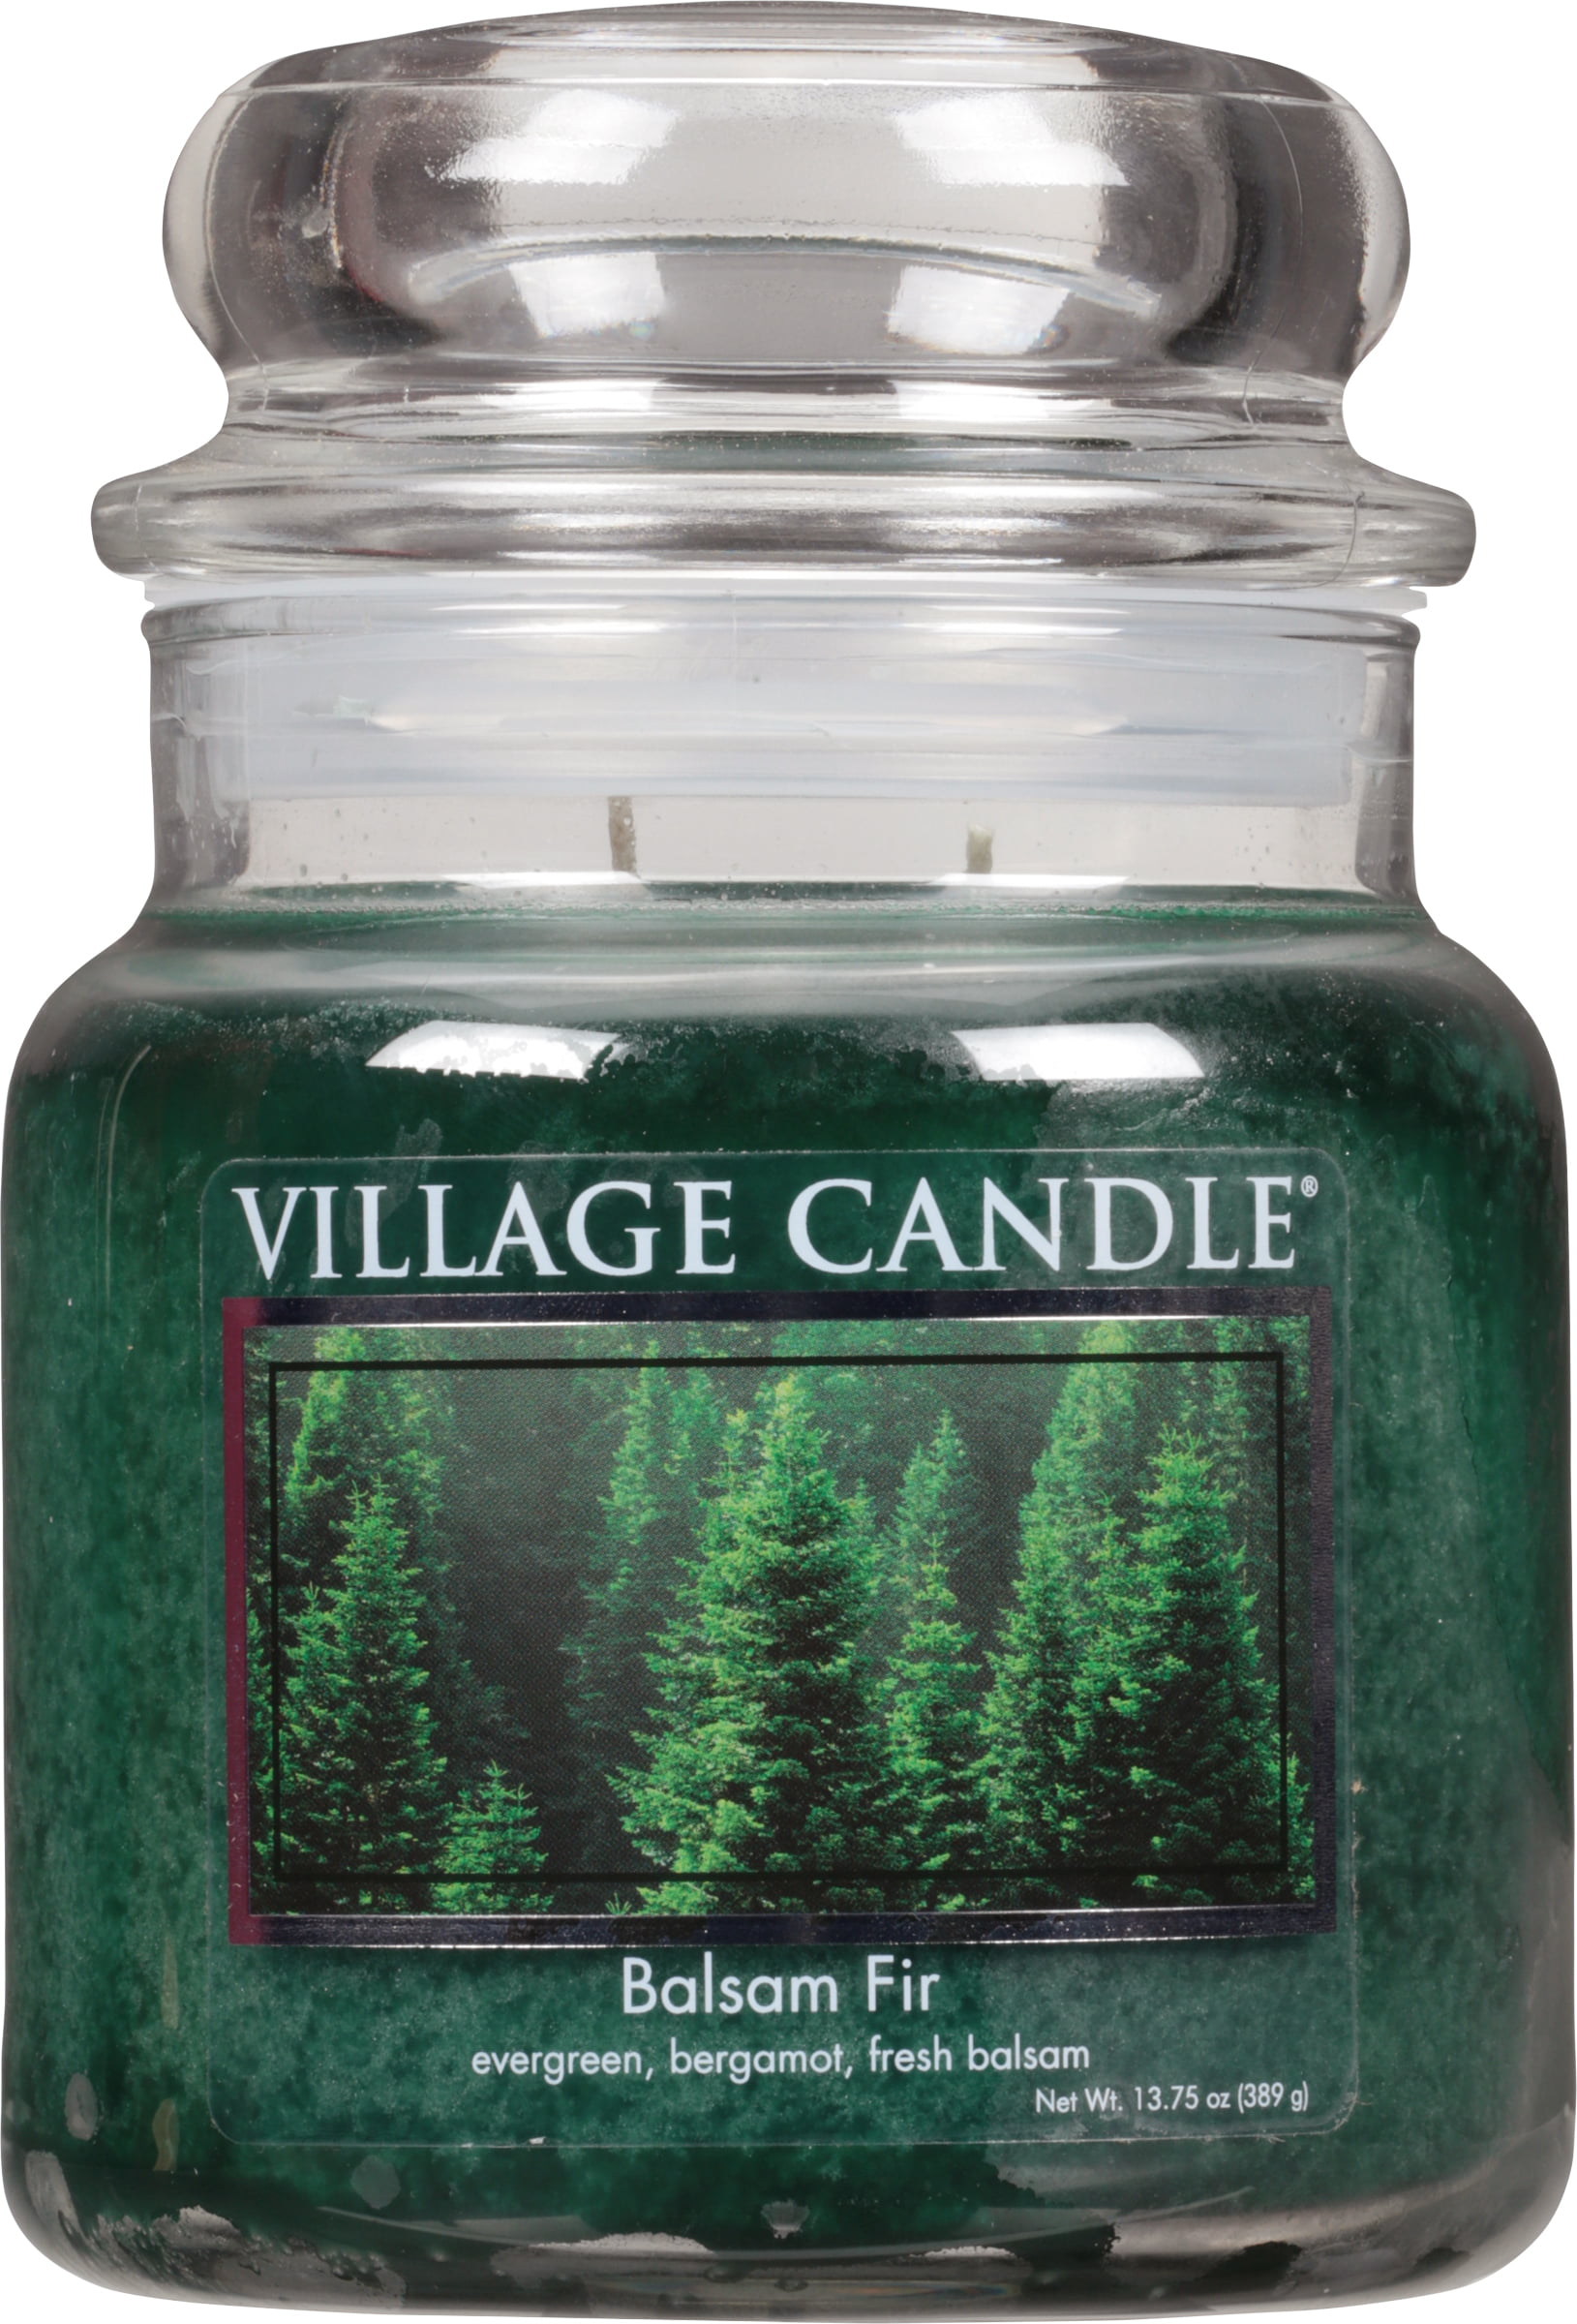 Village Candle Balsam Fir Bergamot Scented Premium Jar Candles Home Fragrances 